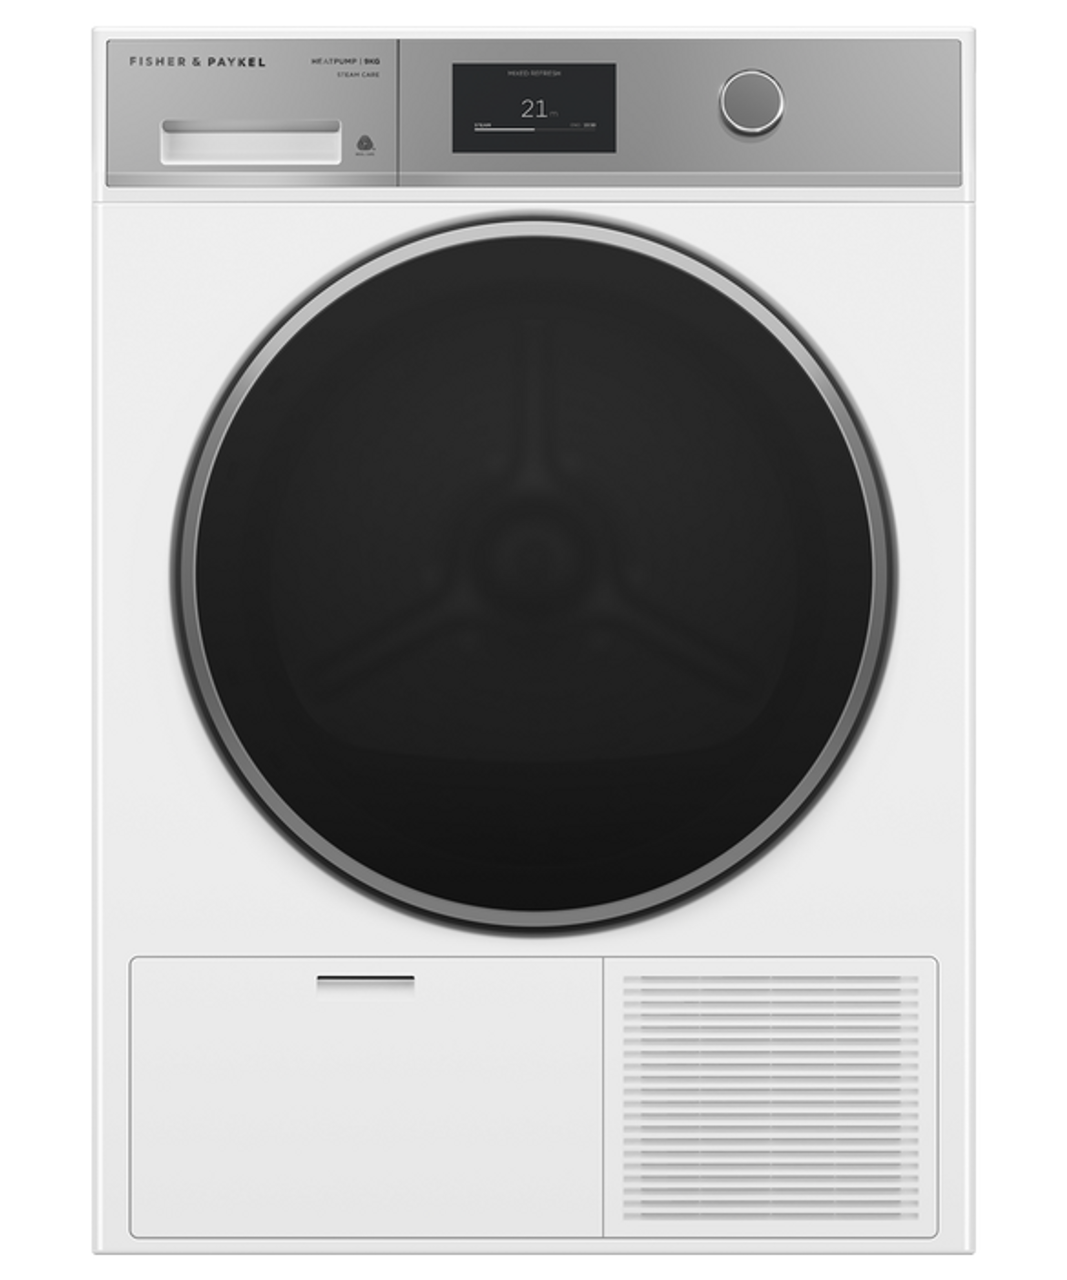 DH9060H1 – 9kg Heat Pump Dryer, Steam Care - White